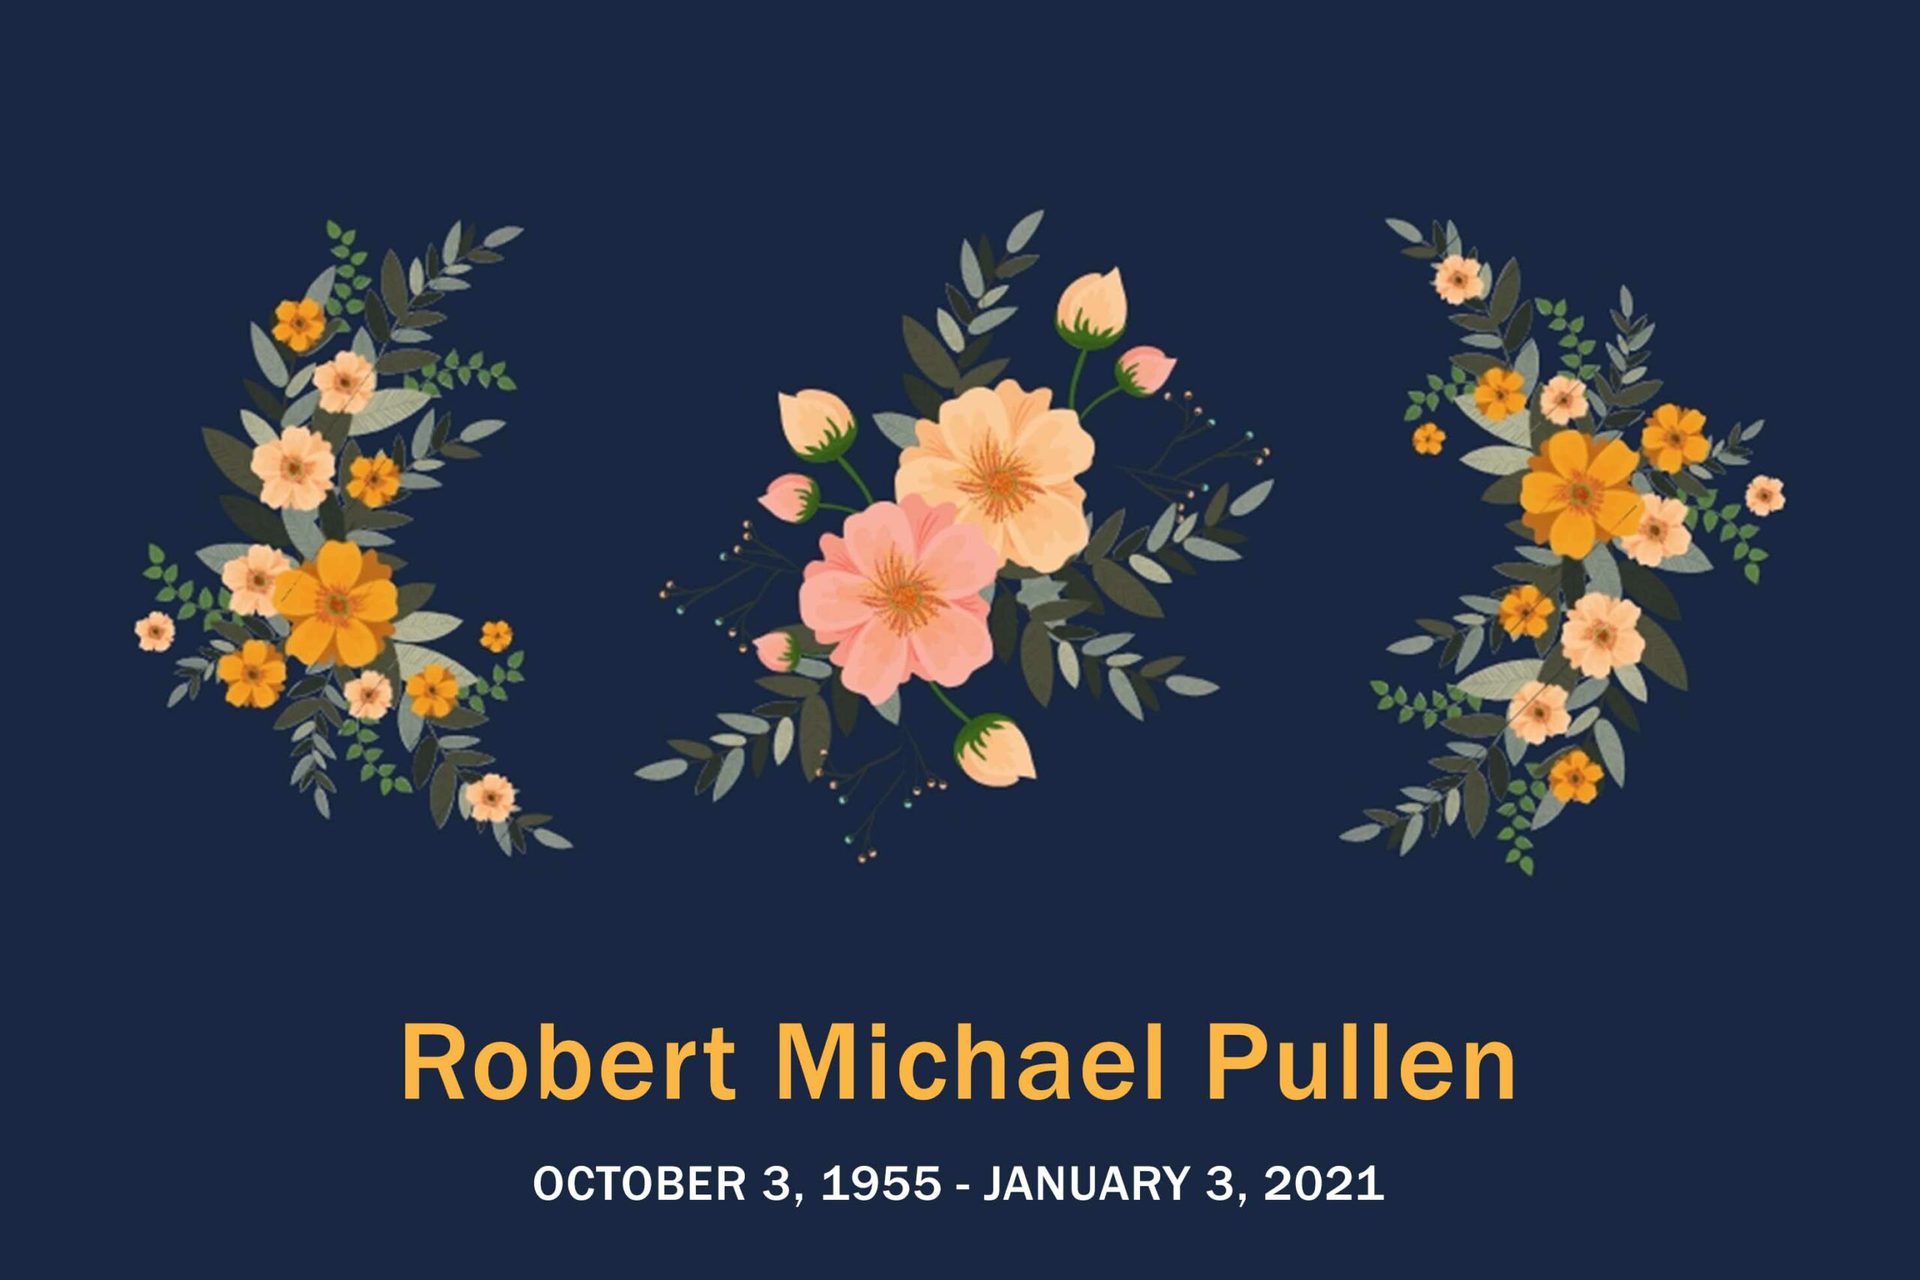 Obituary Robert Pullen